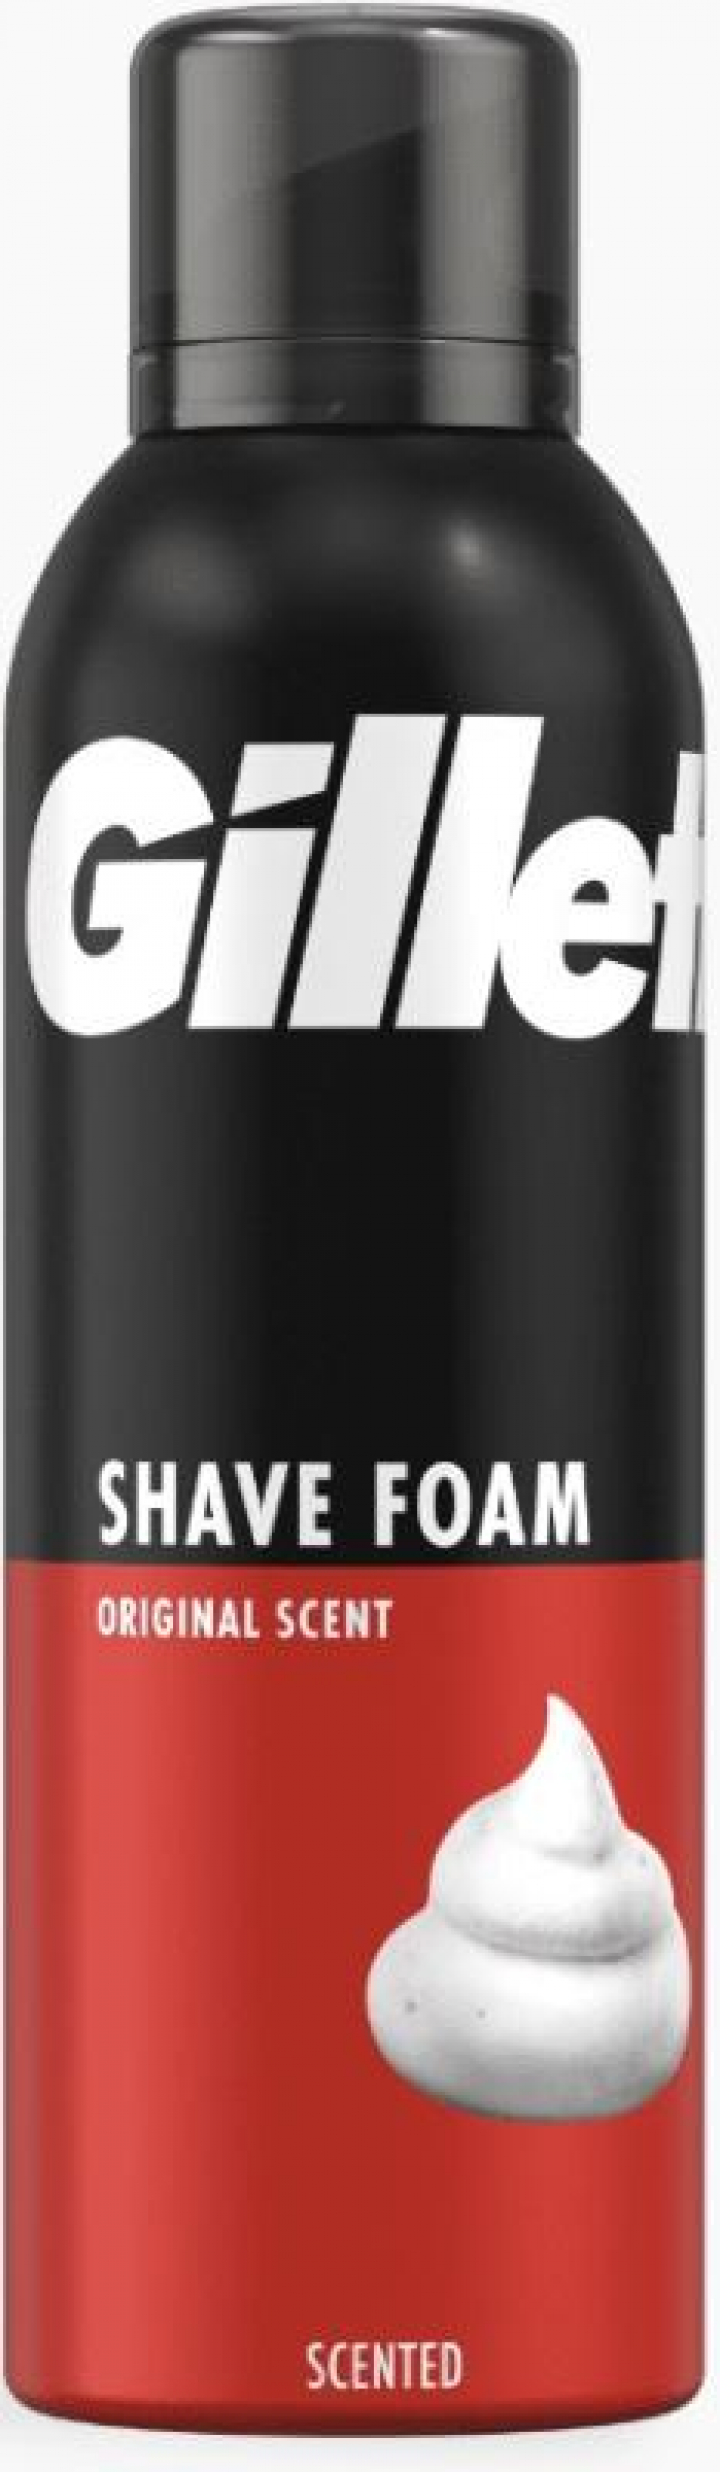 Espuma de barbear para homem Gillette Shave Foam Original Scent 200ml